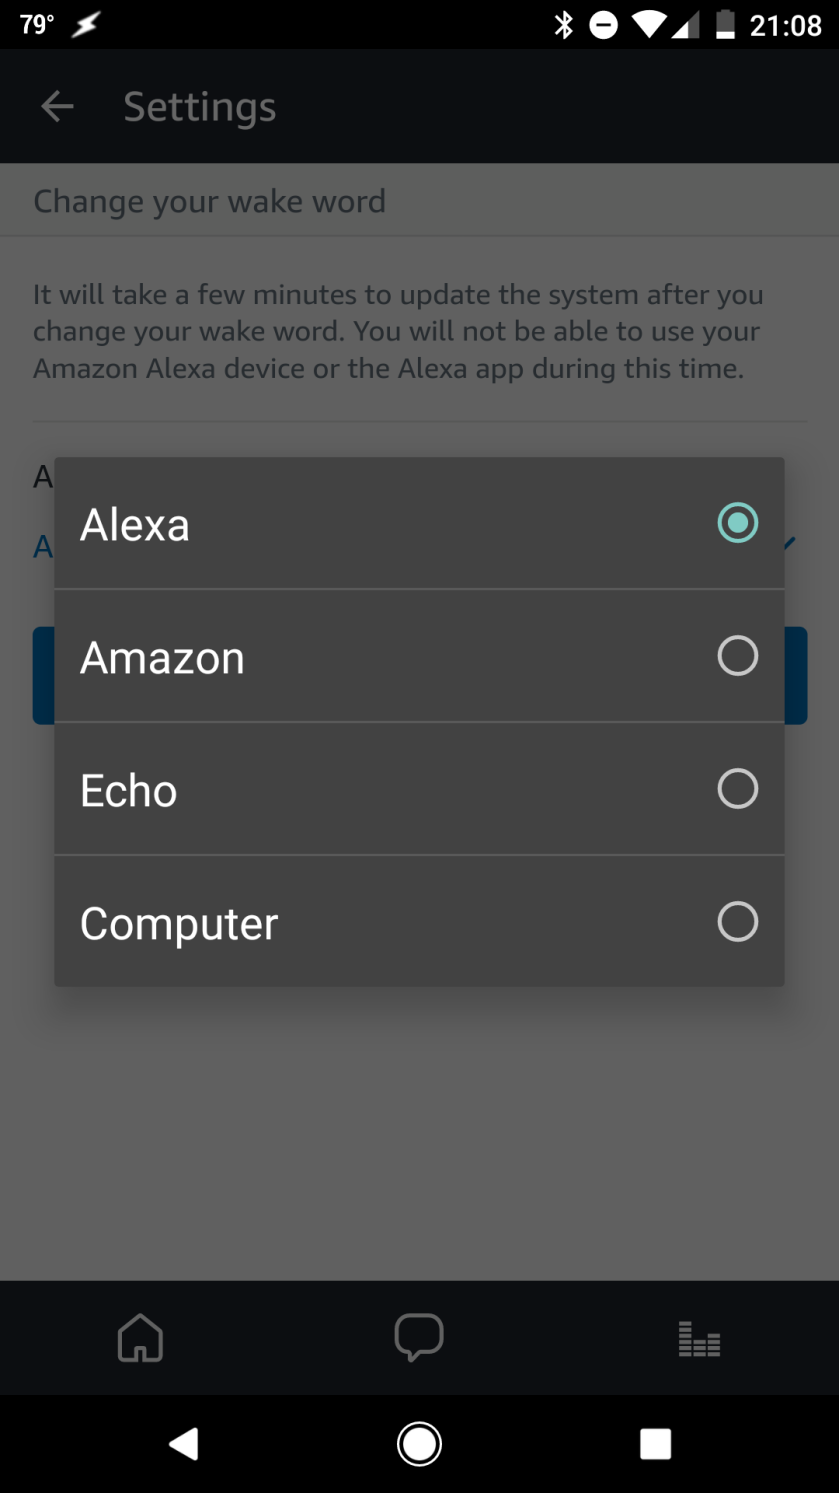 Amazon Echo's list of configurable wake words.